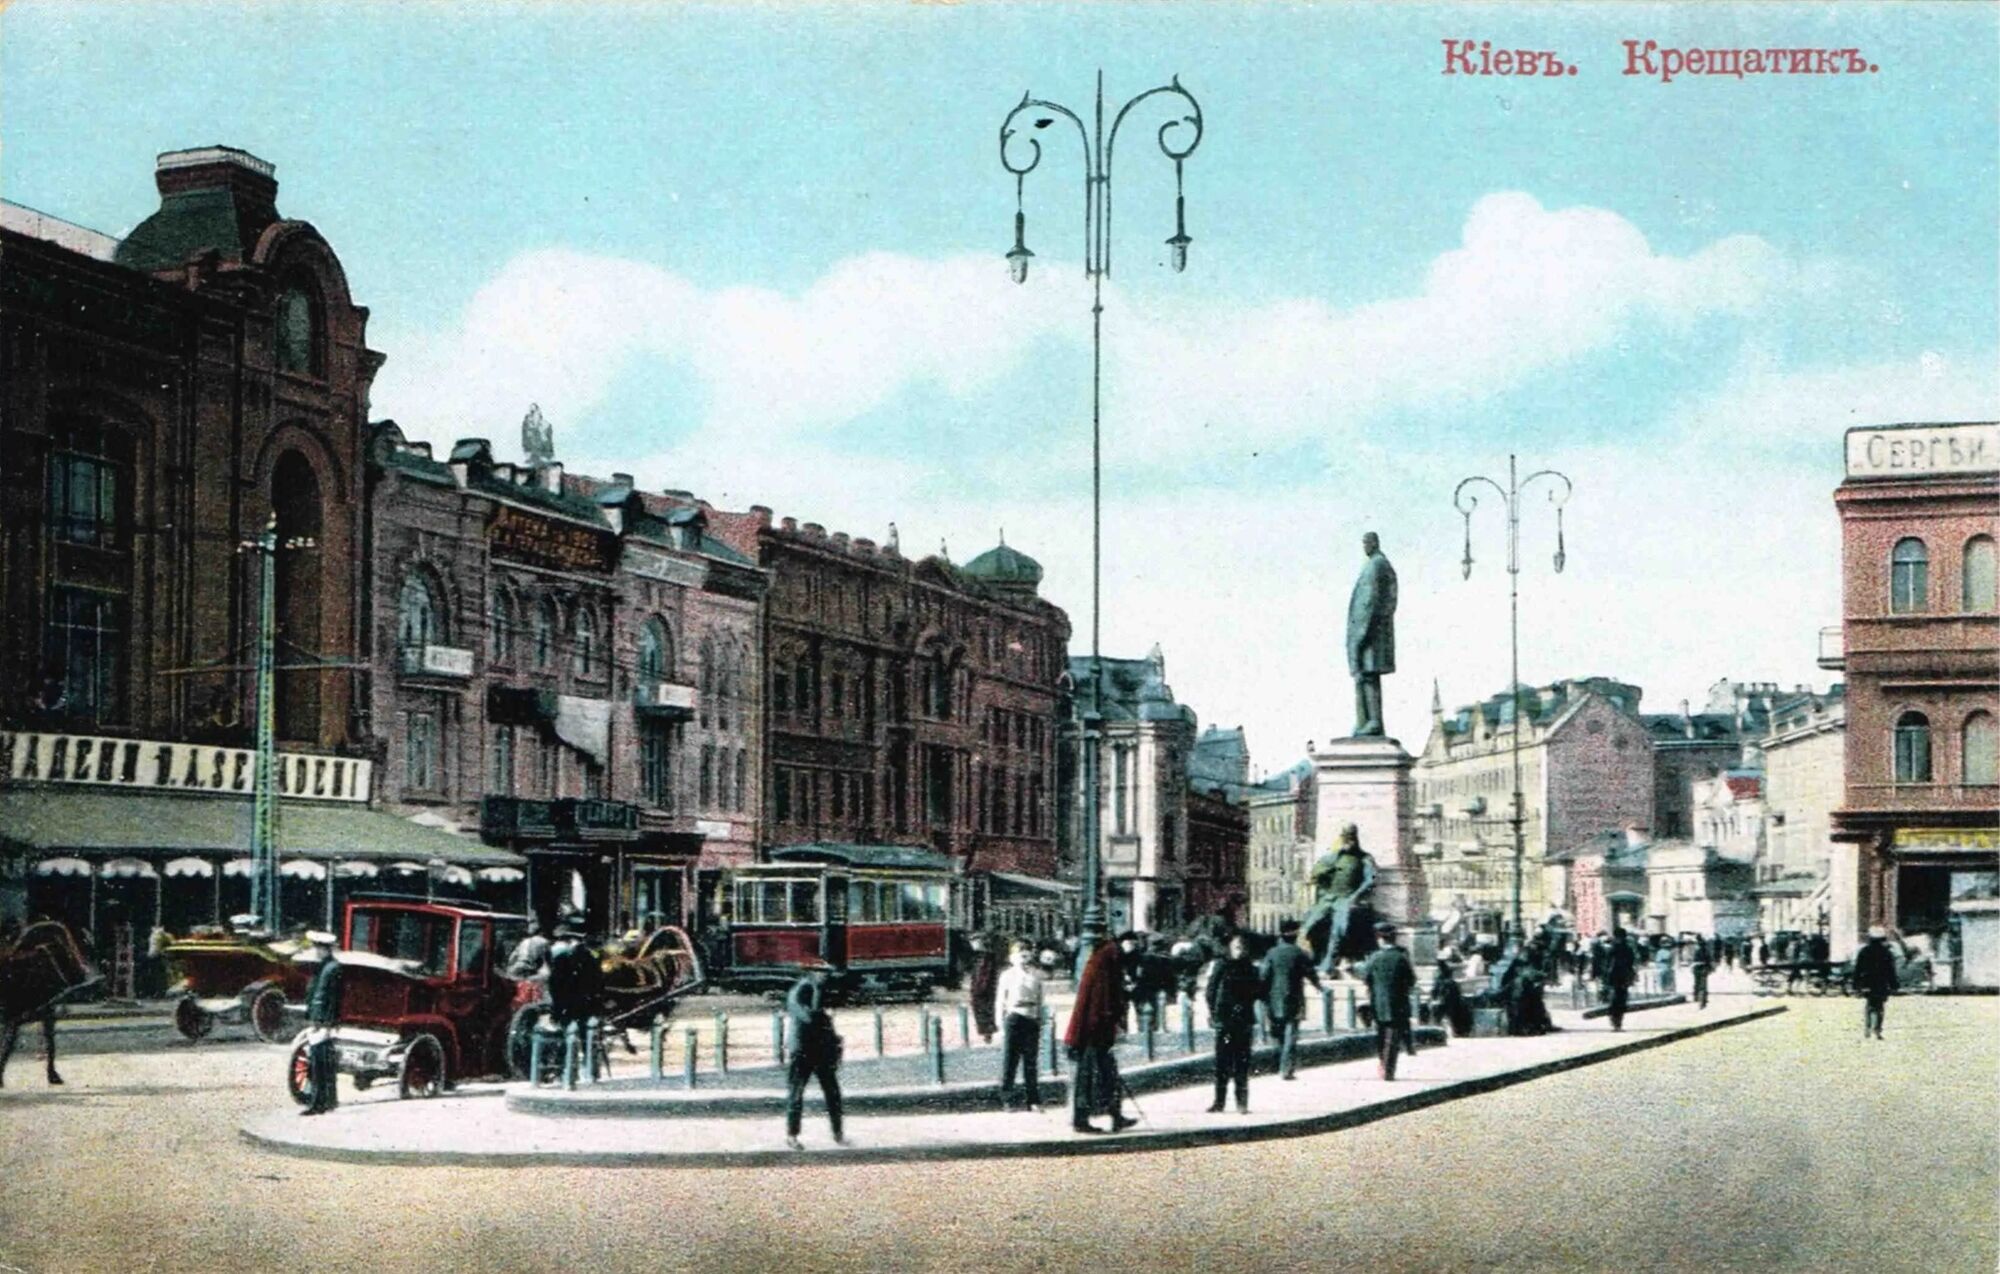 В сети показали, как выглядела улица Крещатик в Киеве в начале ХХ века. Старая открытка